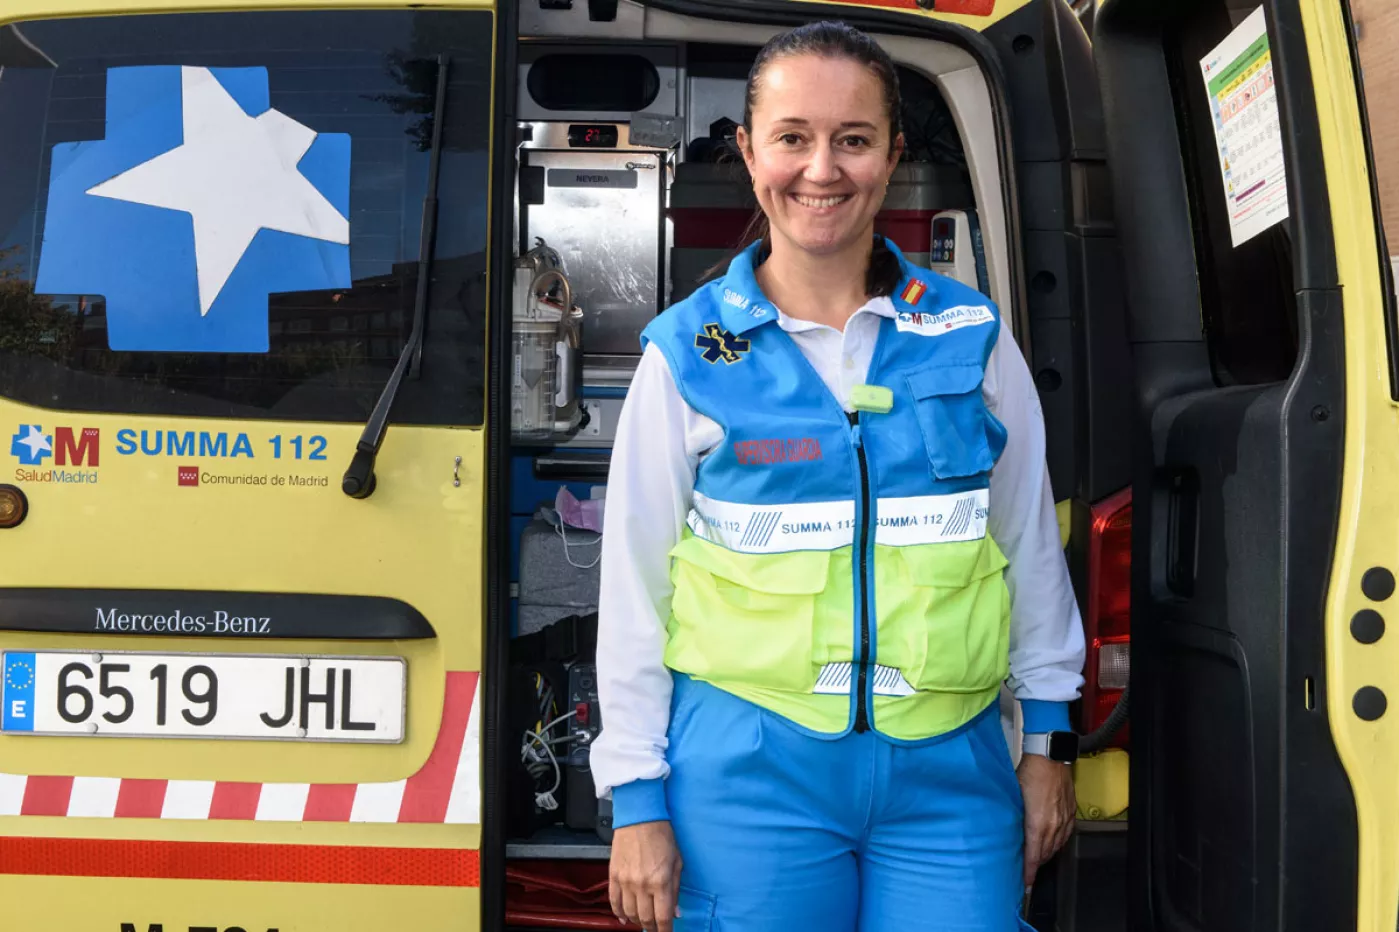 Tras su paso por el Hospital Isabel Zendal, Verónica Real ha vuelto al Servicio de Urgencias Extrahospitalarias de la Comunidad de Madrid Summa 112. FOTO: Luis Camacho.